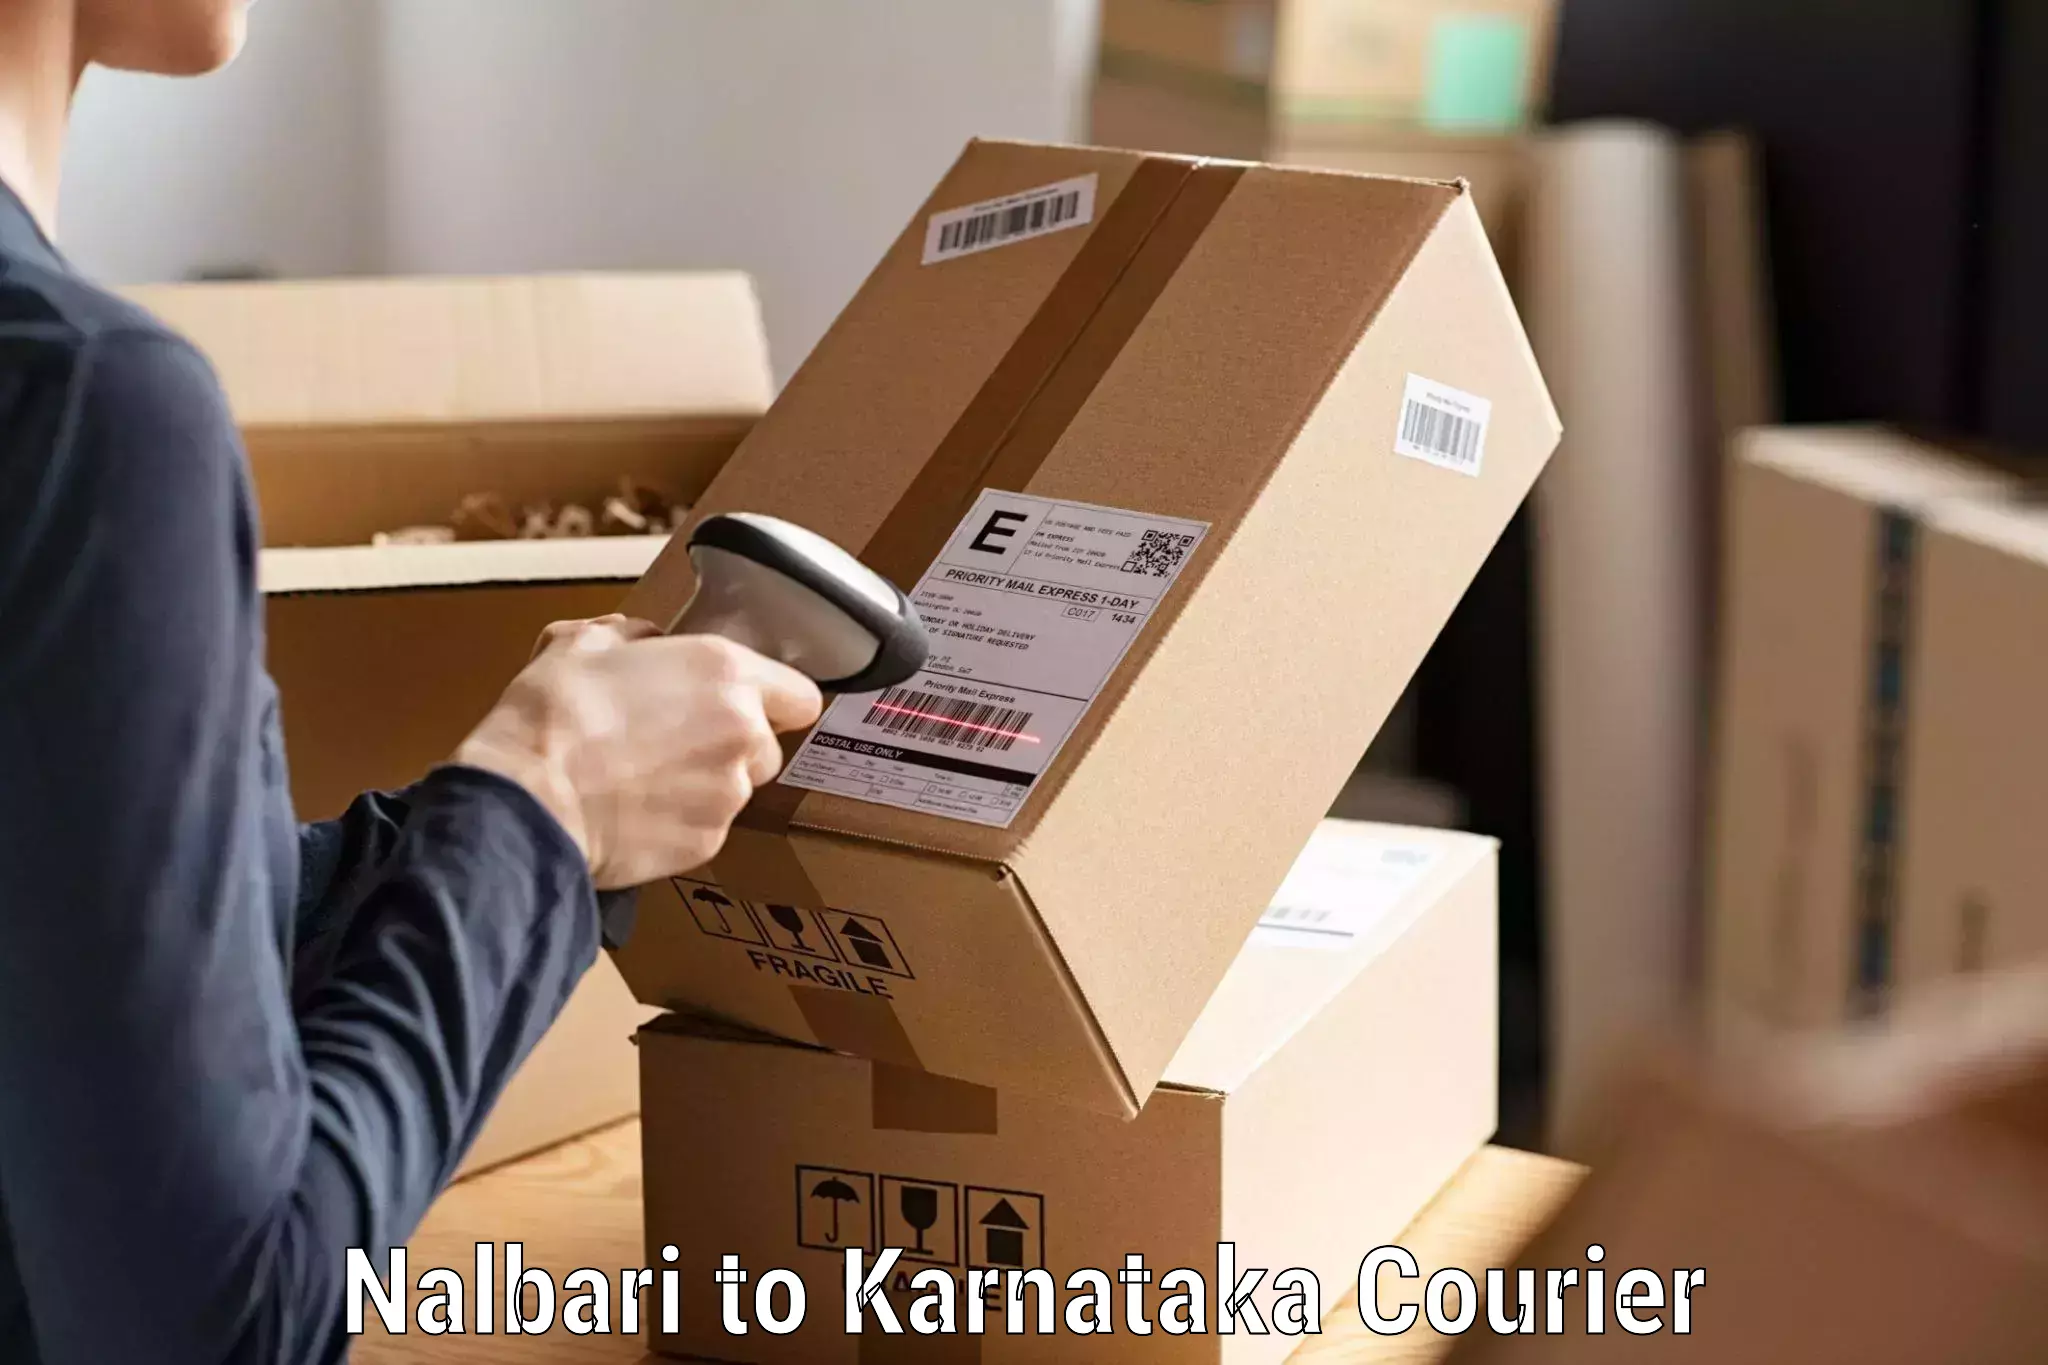 Cargo delivery service Nalbari to Malavalli